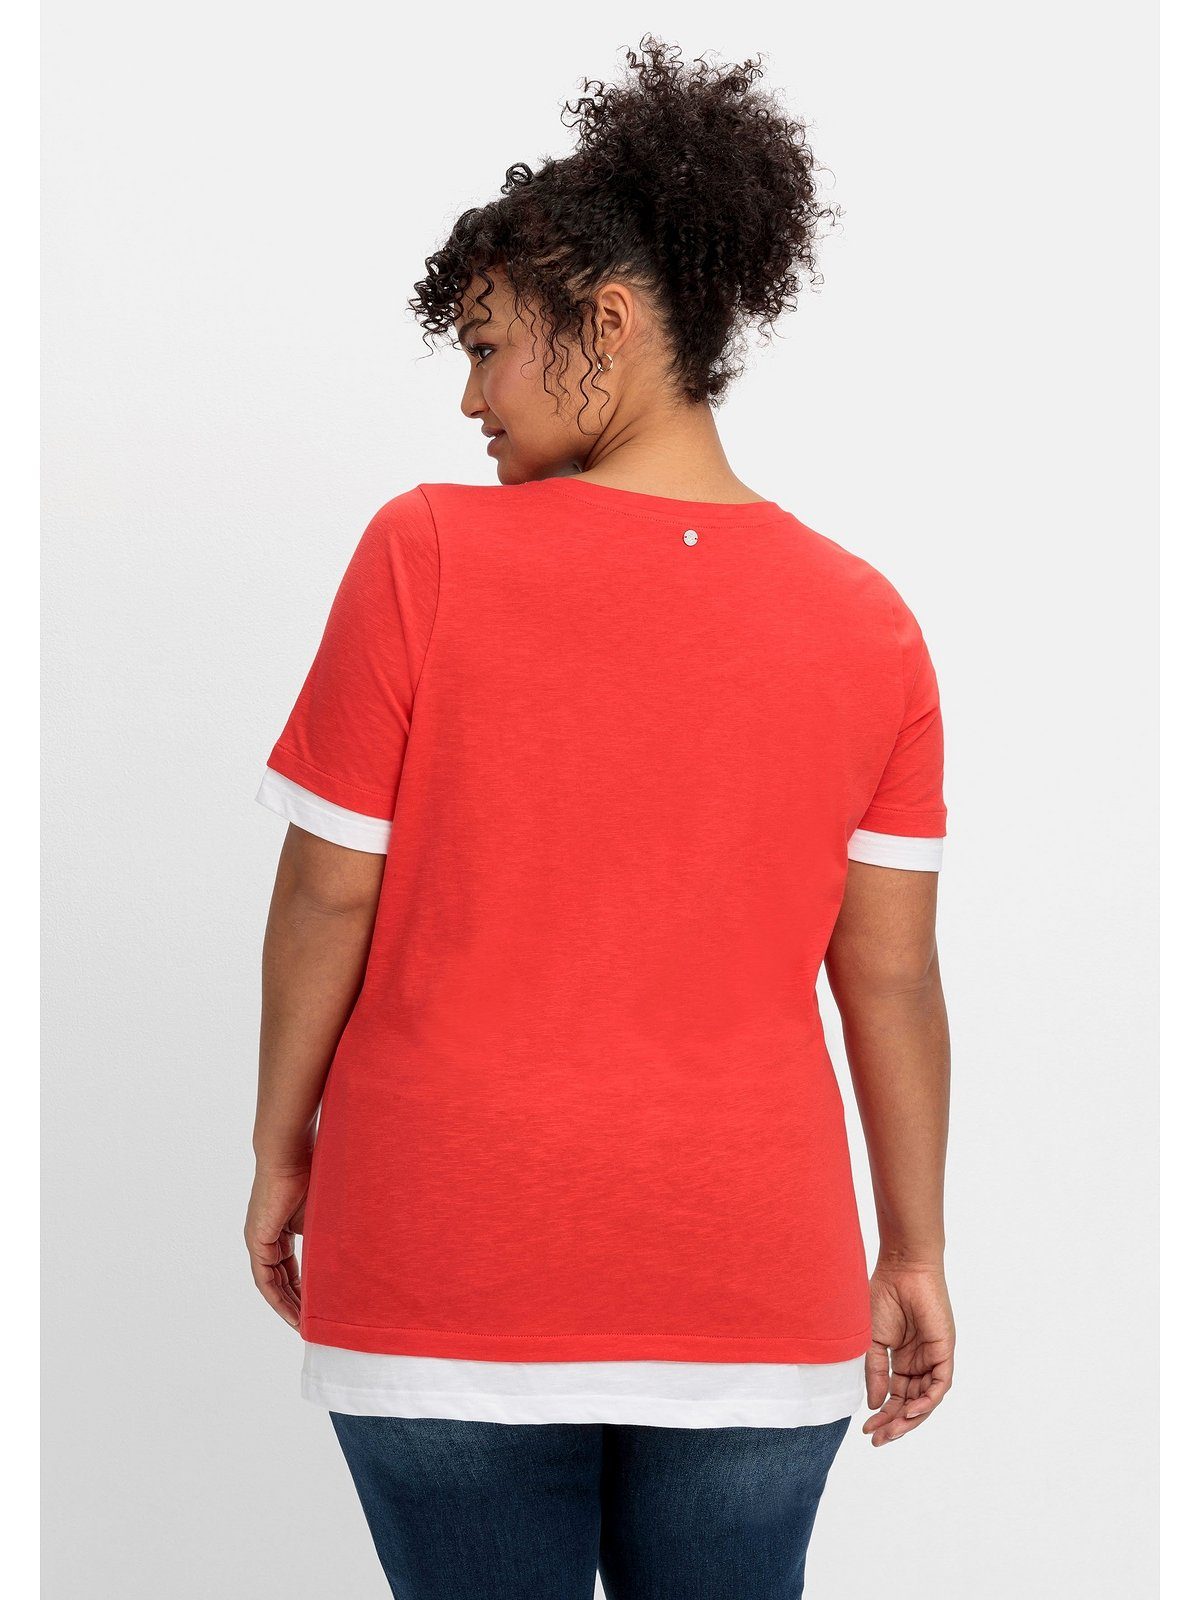 2-in-1-Optik, V-Ausschnitt mit in Sheego 2-in-1-Shirt Größen Große rot-weiß